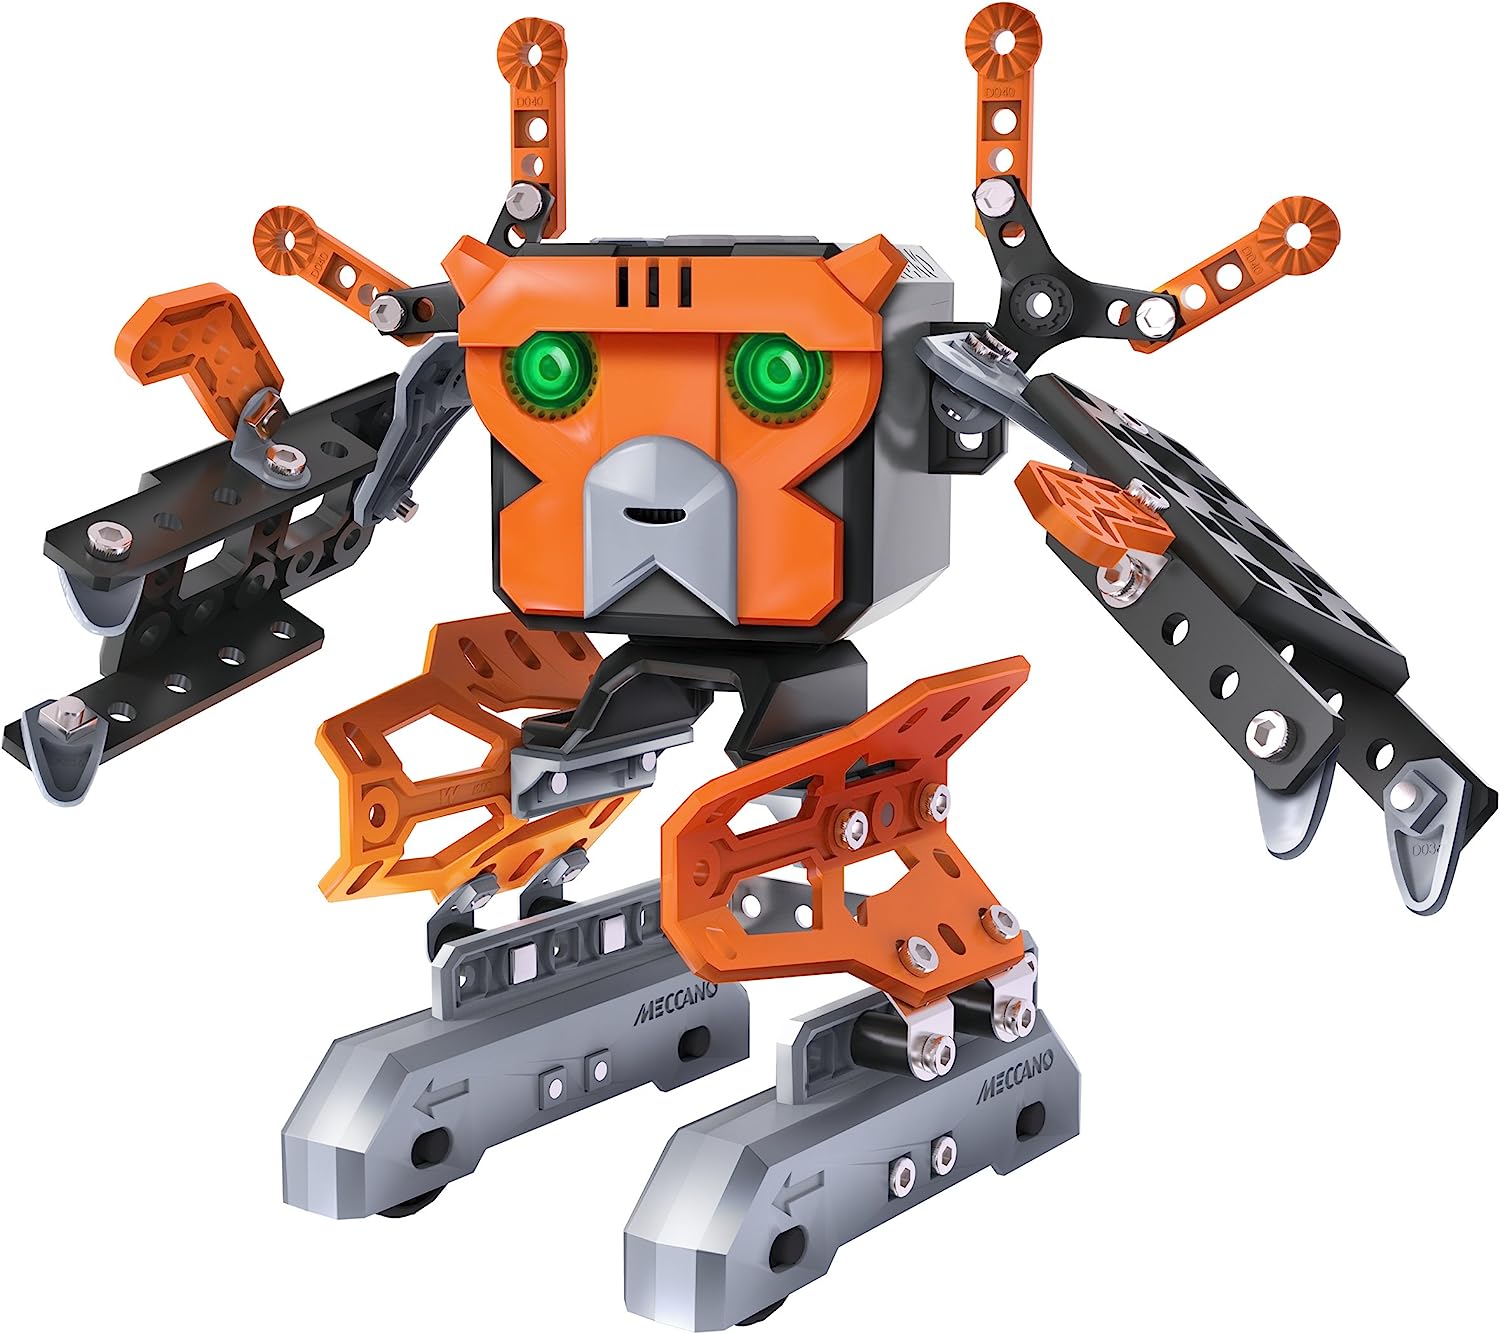 メカノ 知育玩具 パズル ブロック 【送料無料】MECCANO-Erector - Micronoid Code Magna Programmable  Robot Building Kitメカノ 知育玩具 パズル ブロック | angelica